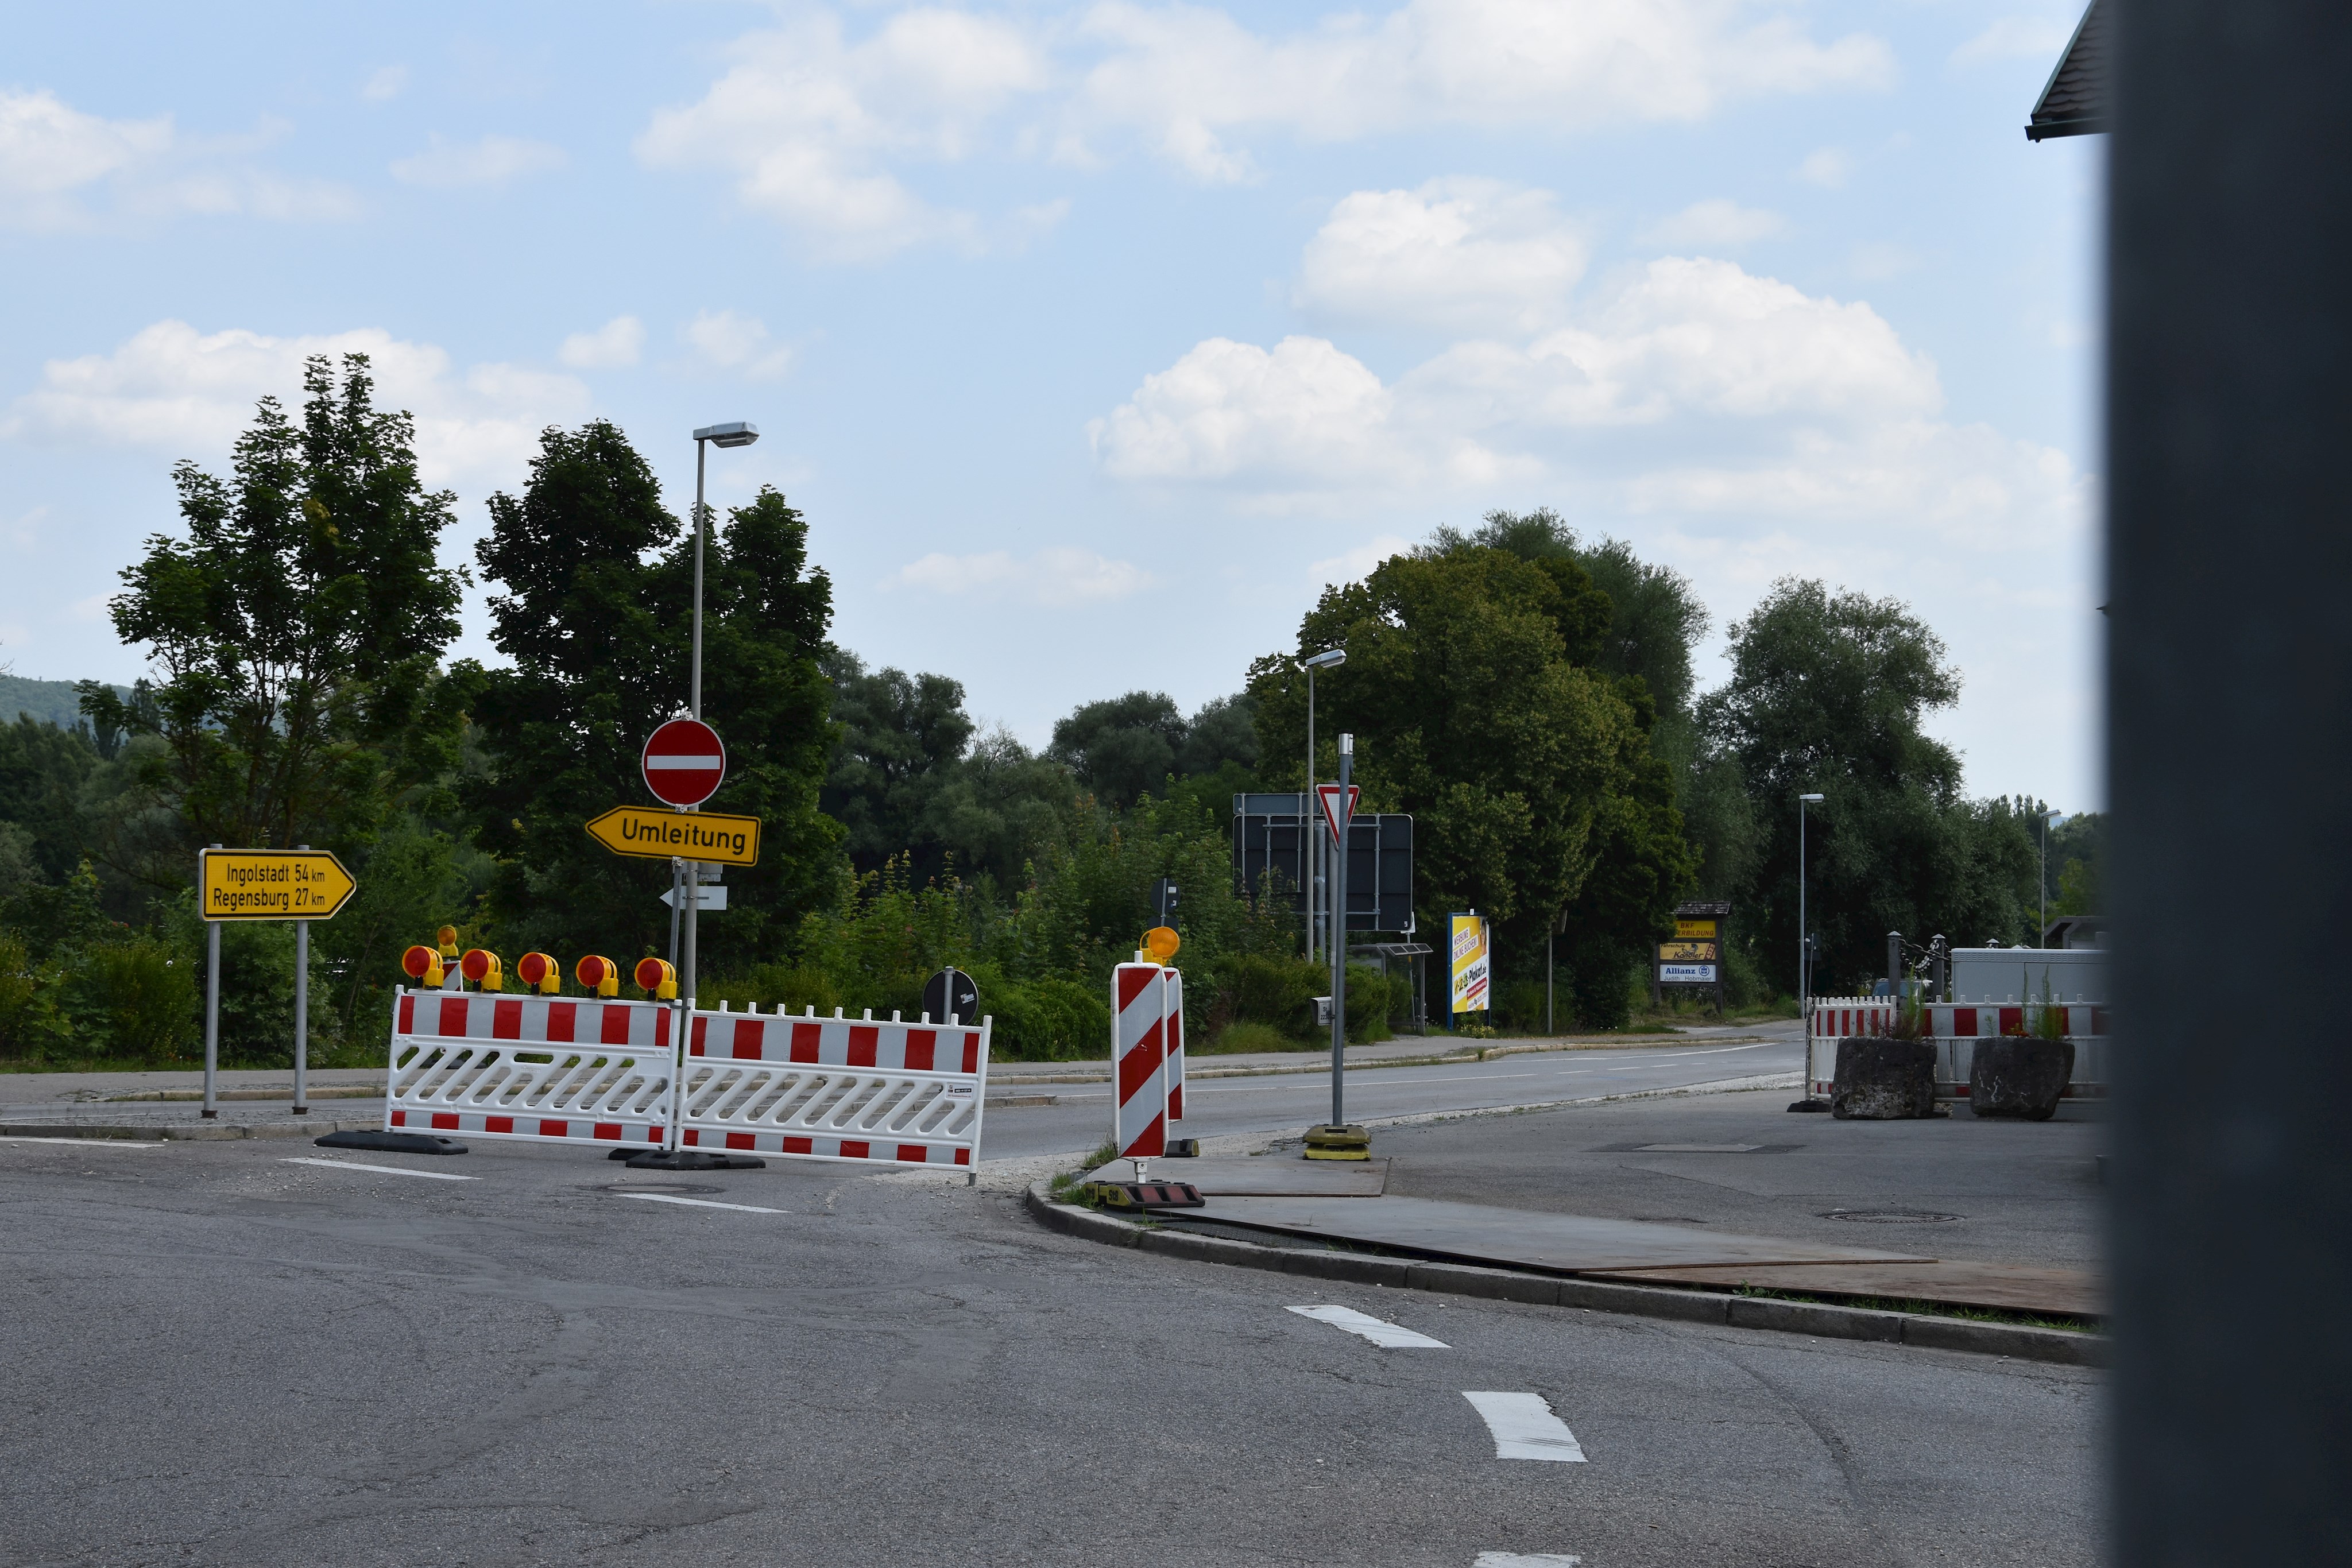 Sperrung der Regensburger Straße in Kelheim stadtauswärts bis zum 24.09.2021